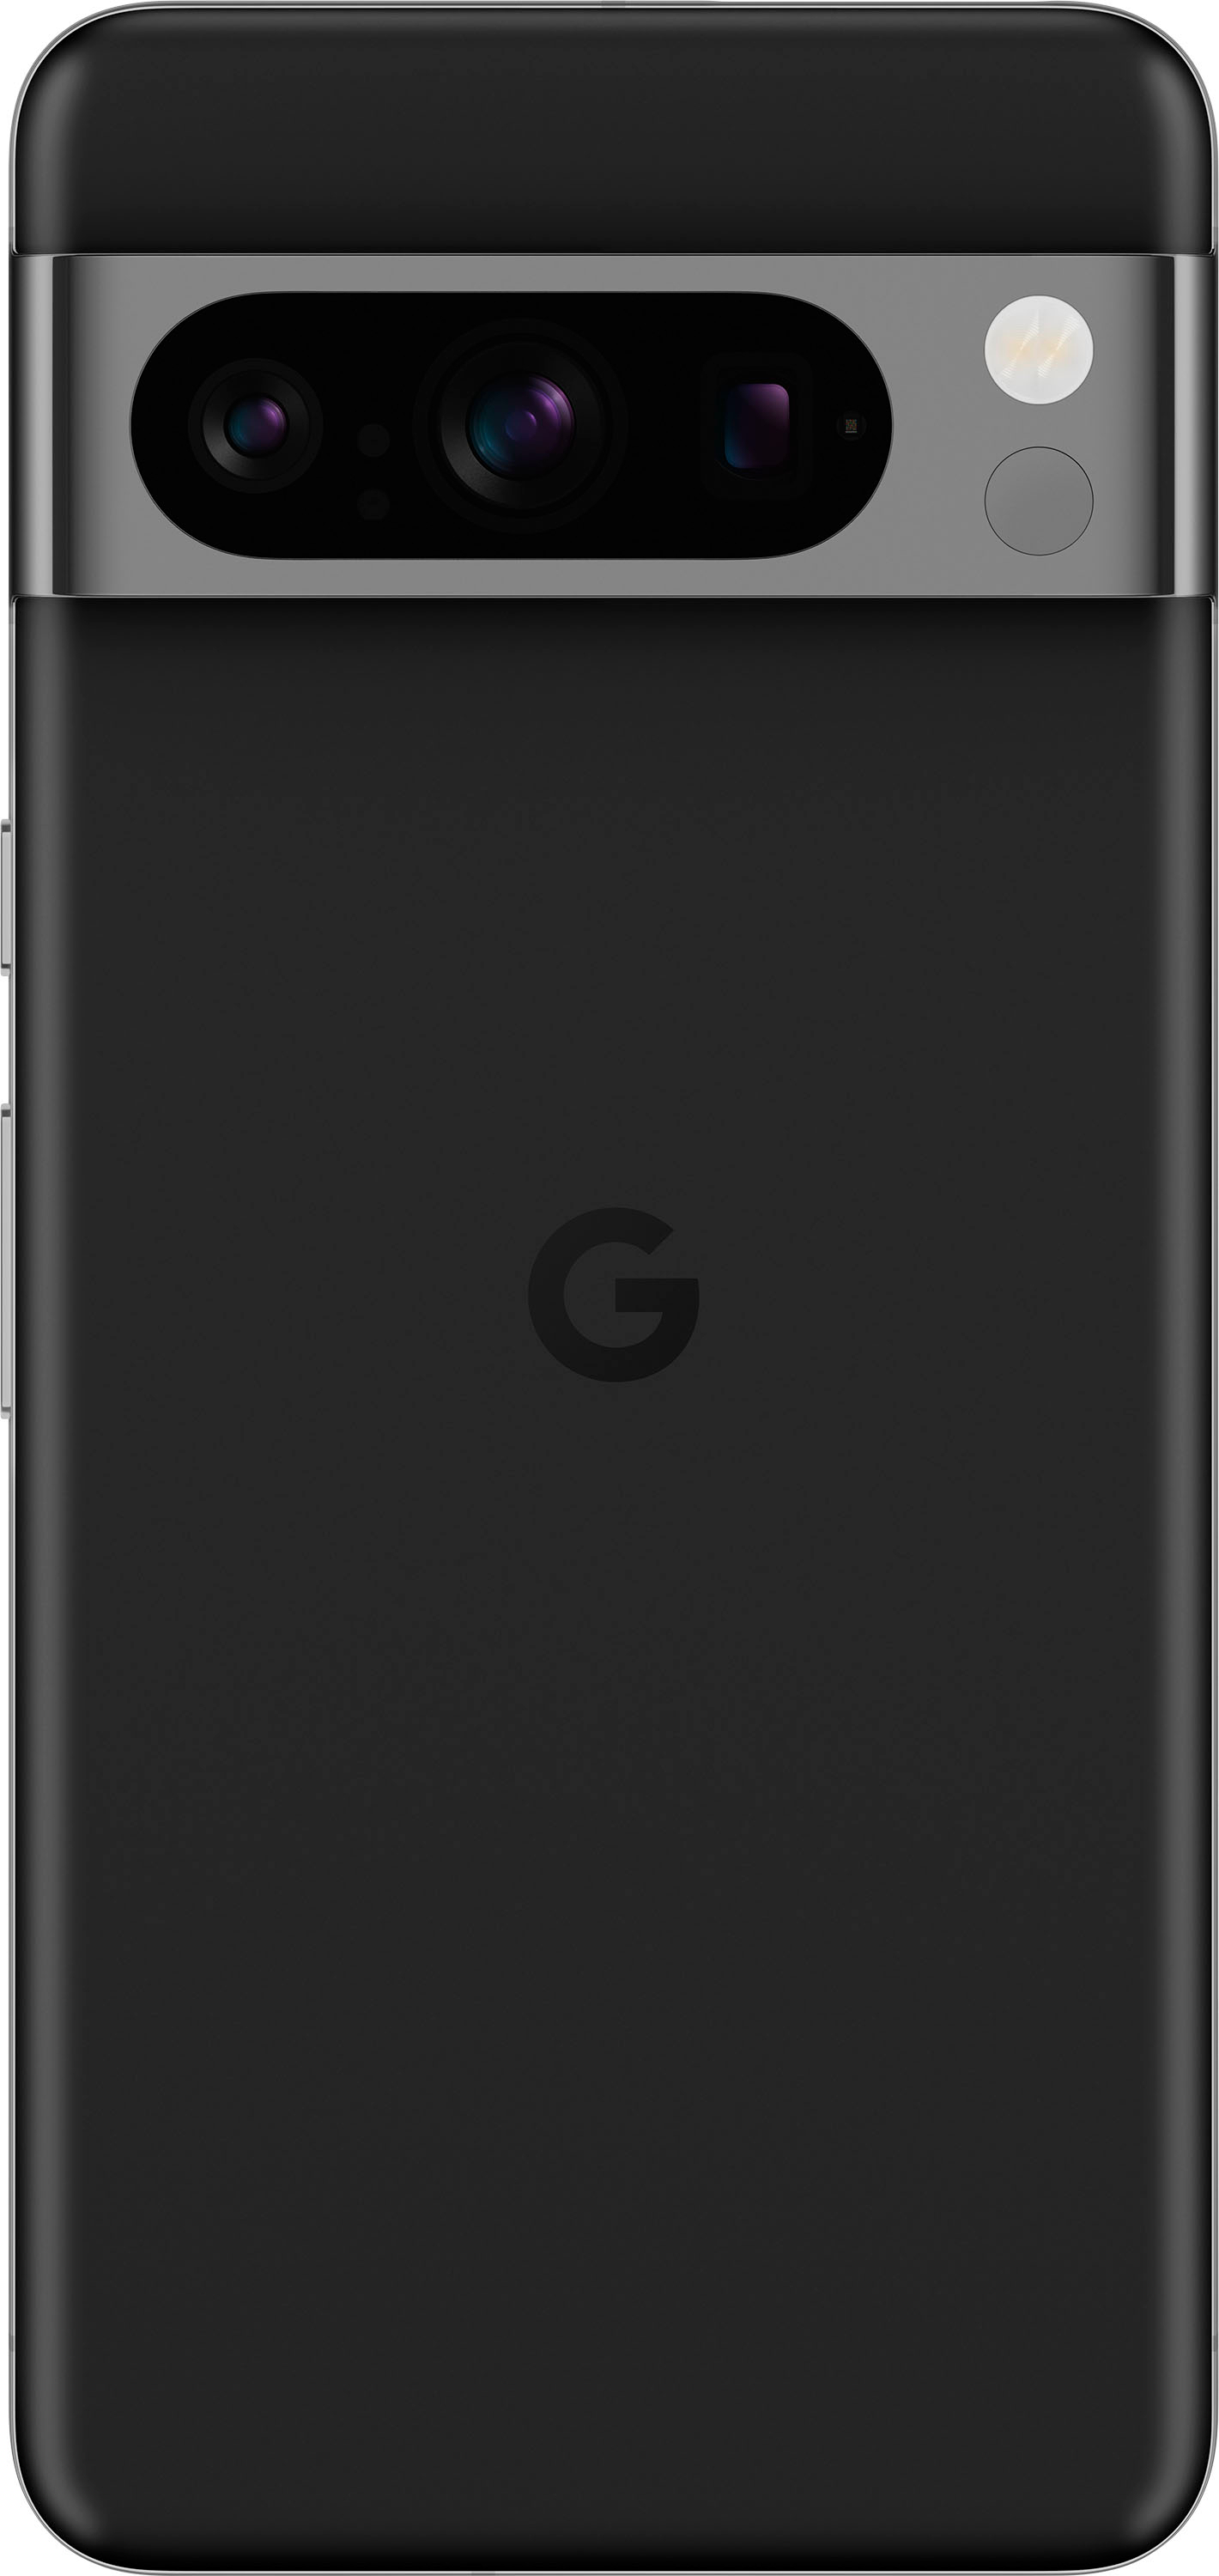 - GA04798-US Pixel Google Buy Best Obsidian Pro (Unlocked) 128GB 8